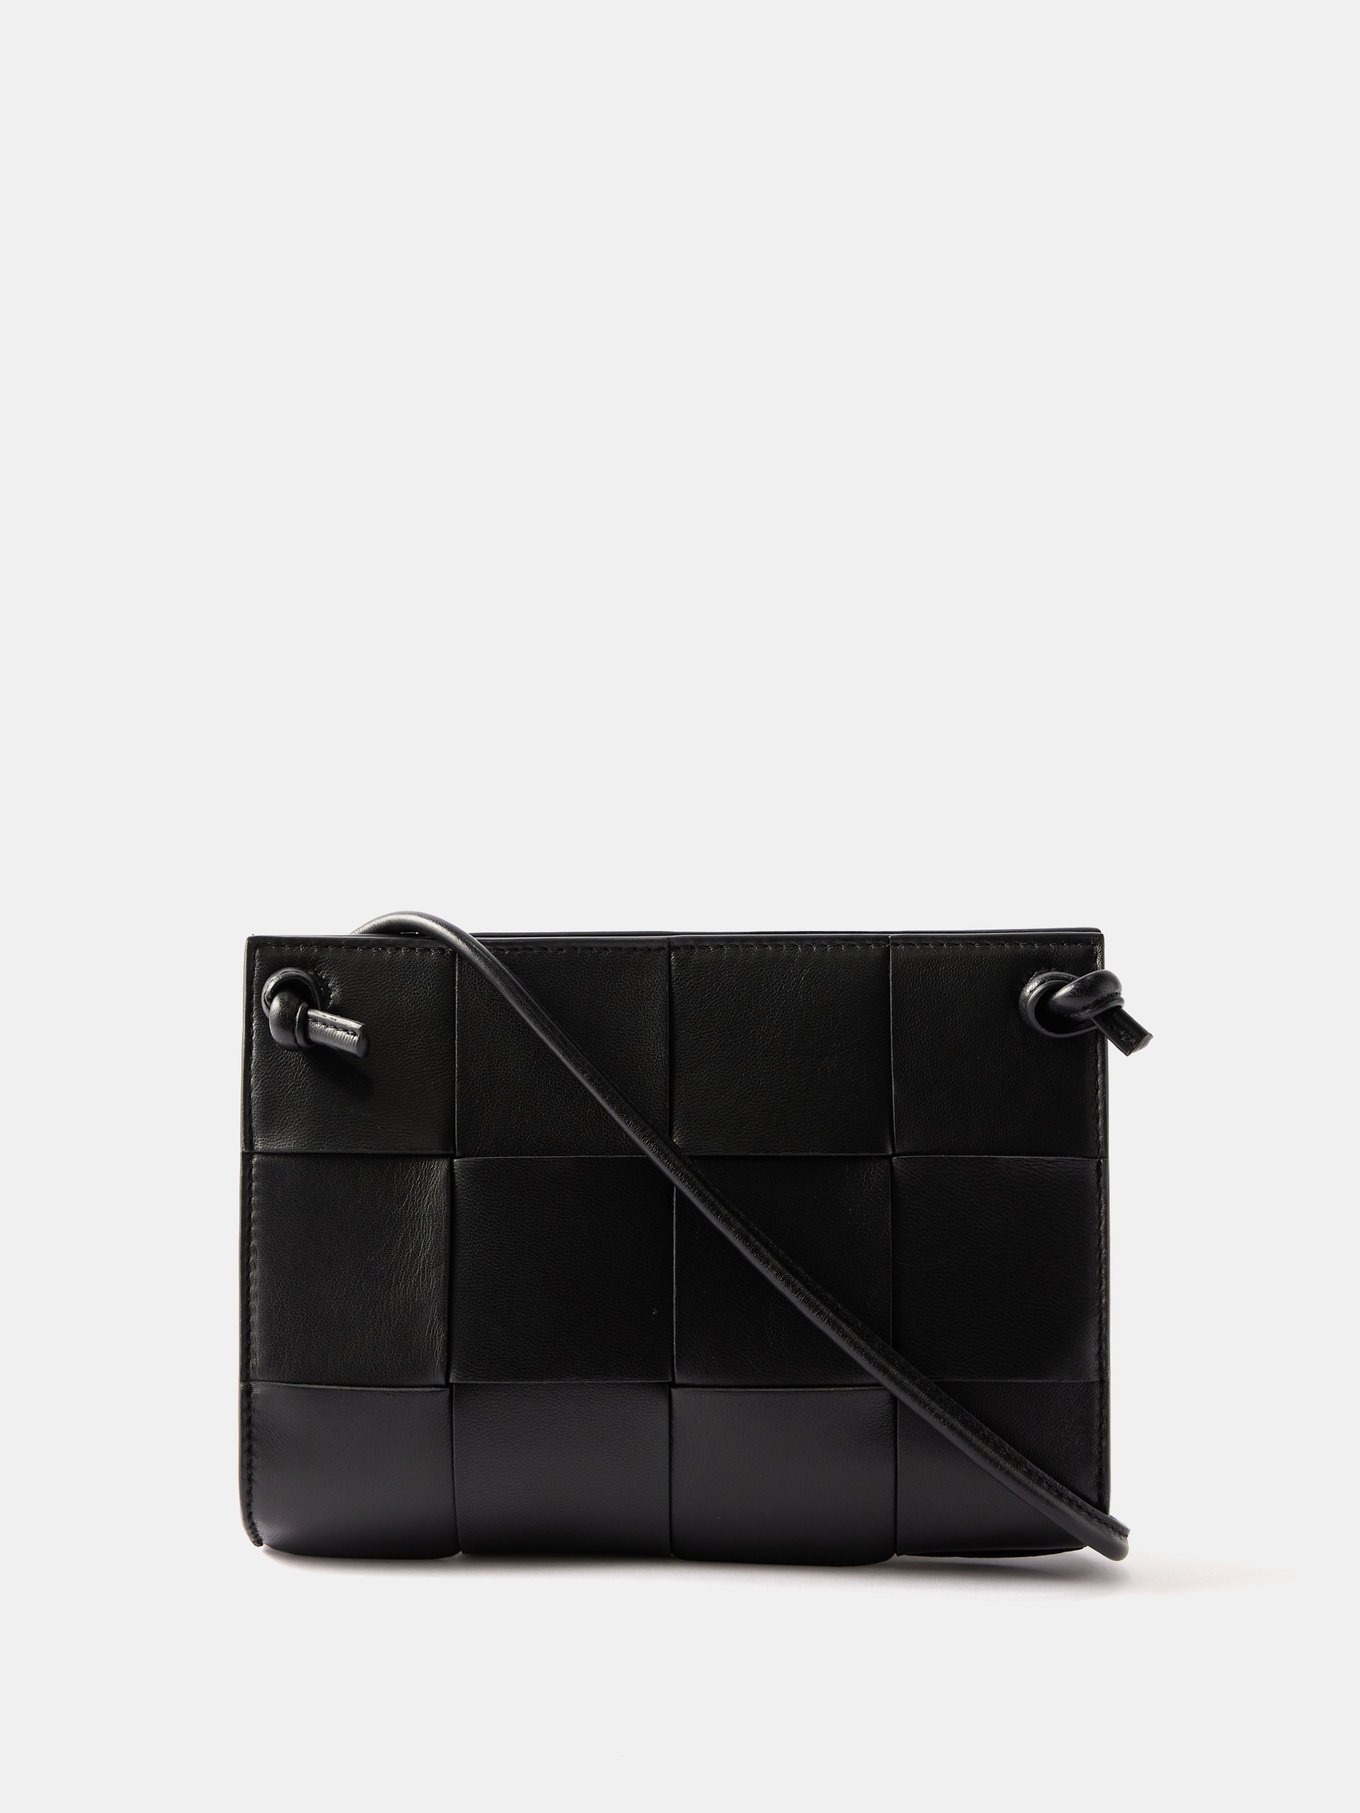 Black Mini Intrecciato-leather cross-body bag, Bottega Veneta